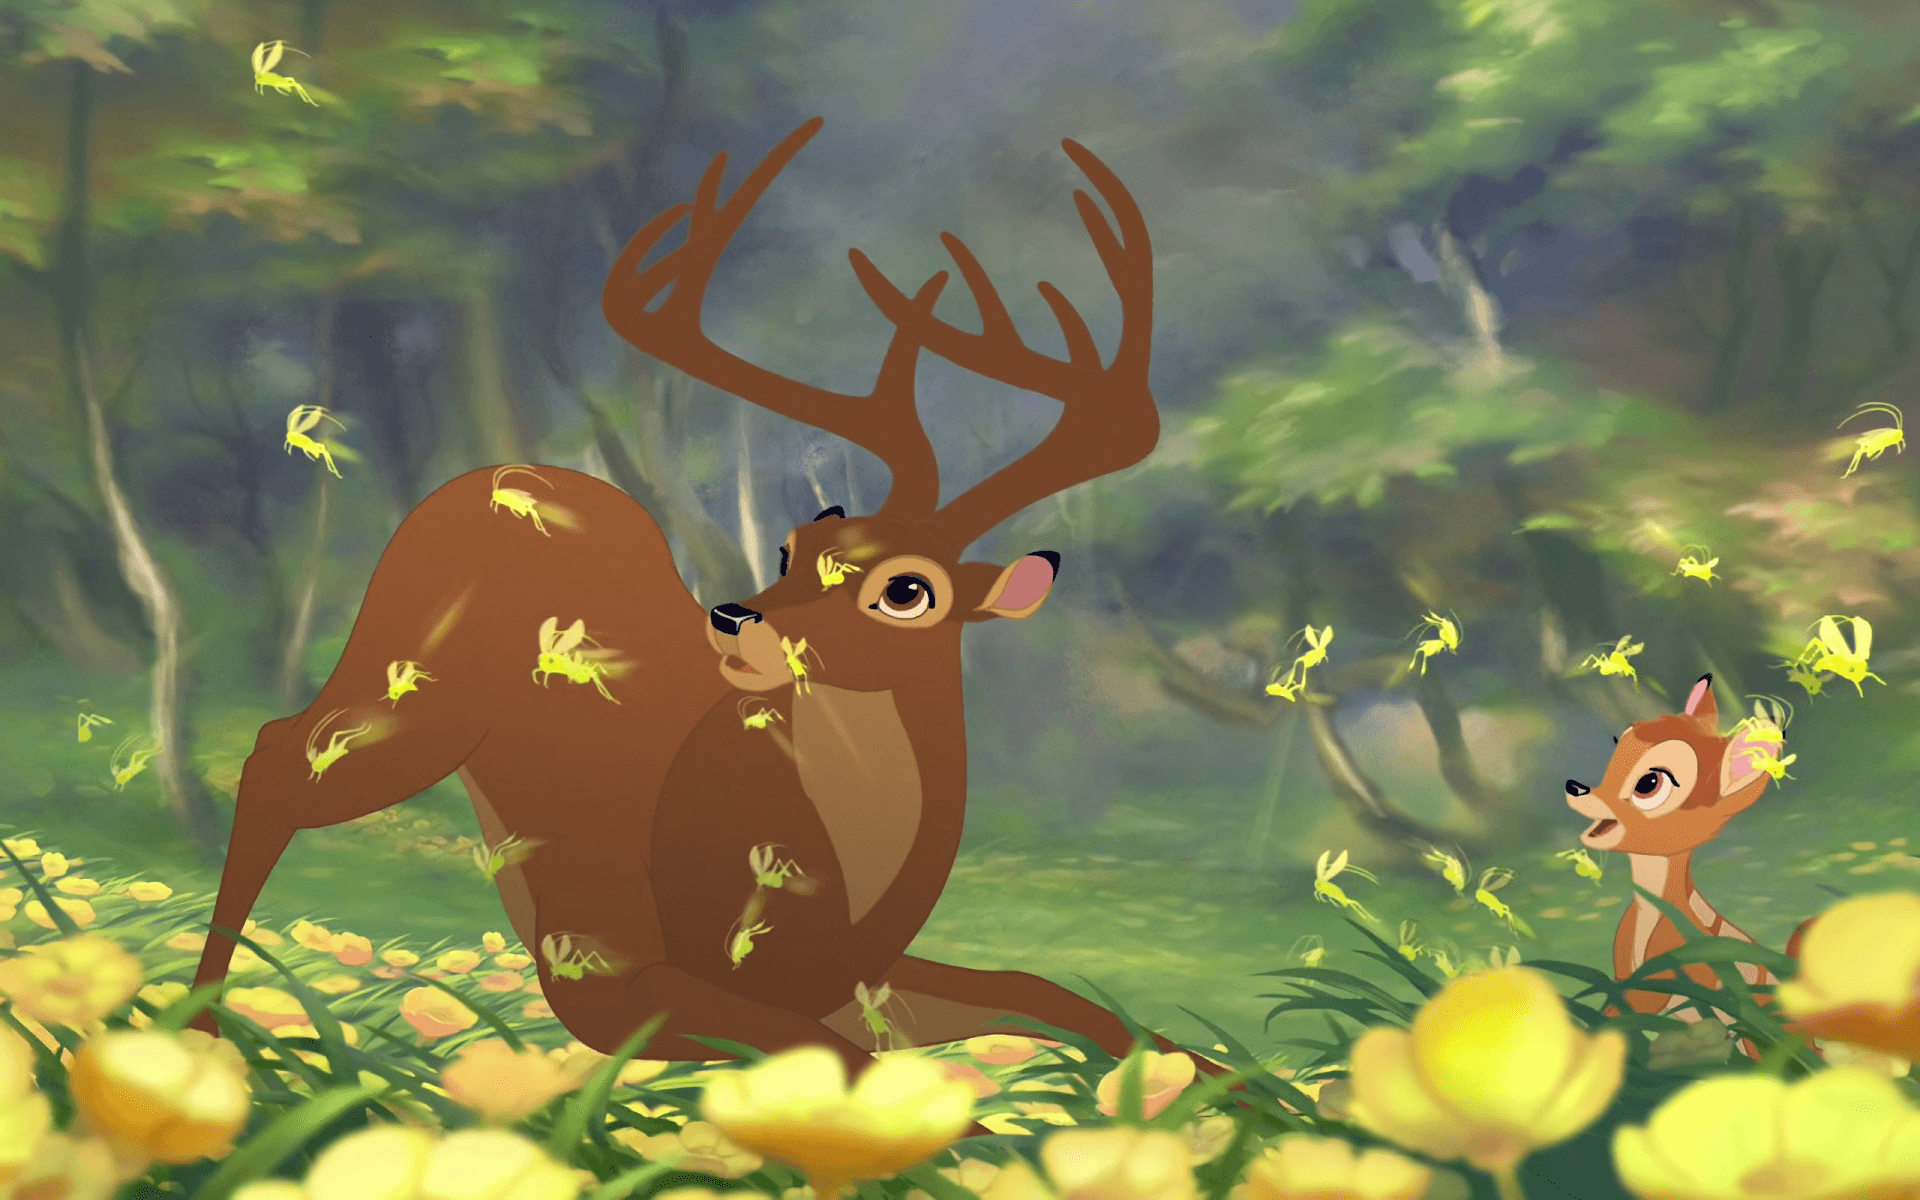 Bambiindtager En Yndefuld Positur I Skoven.